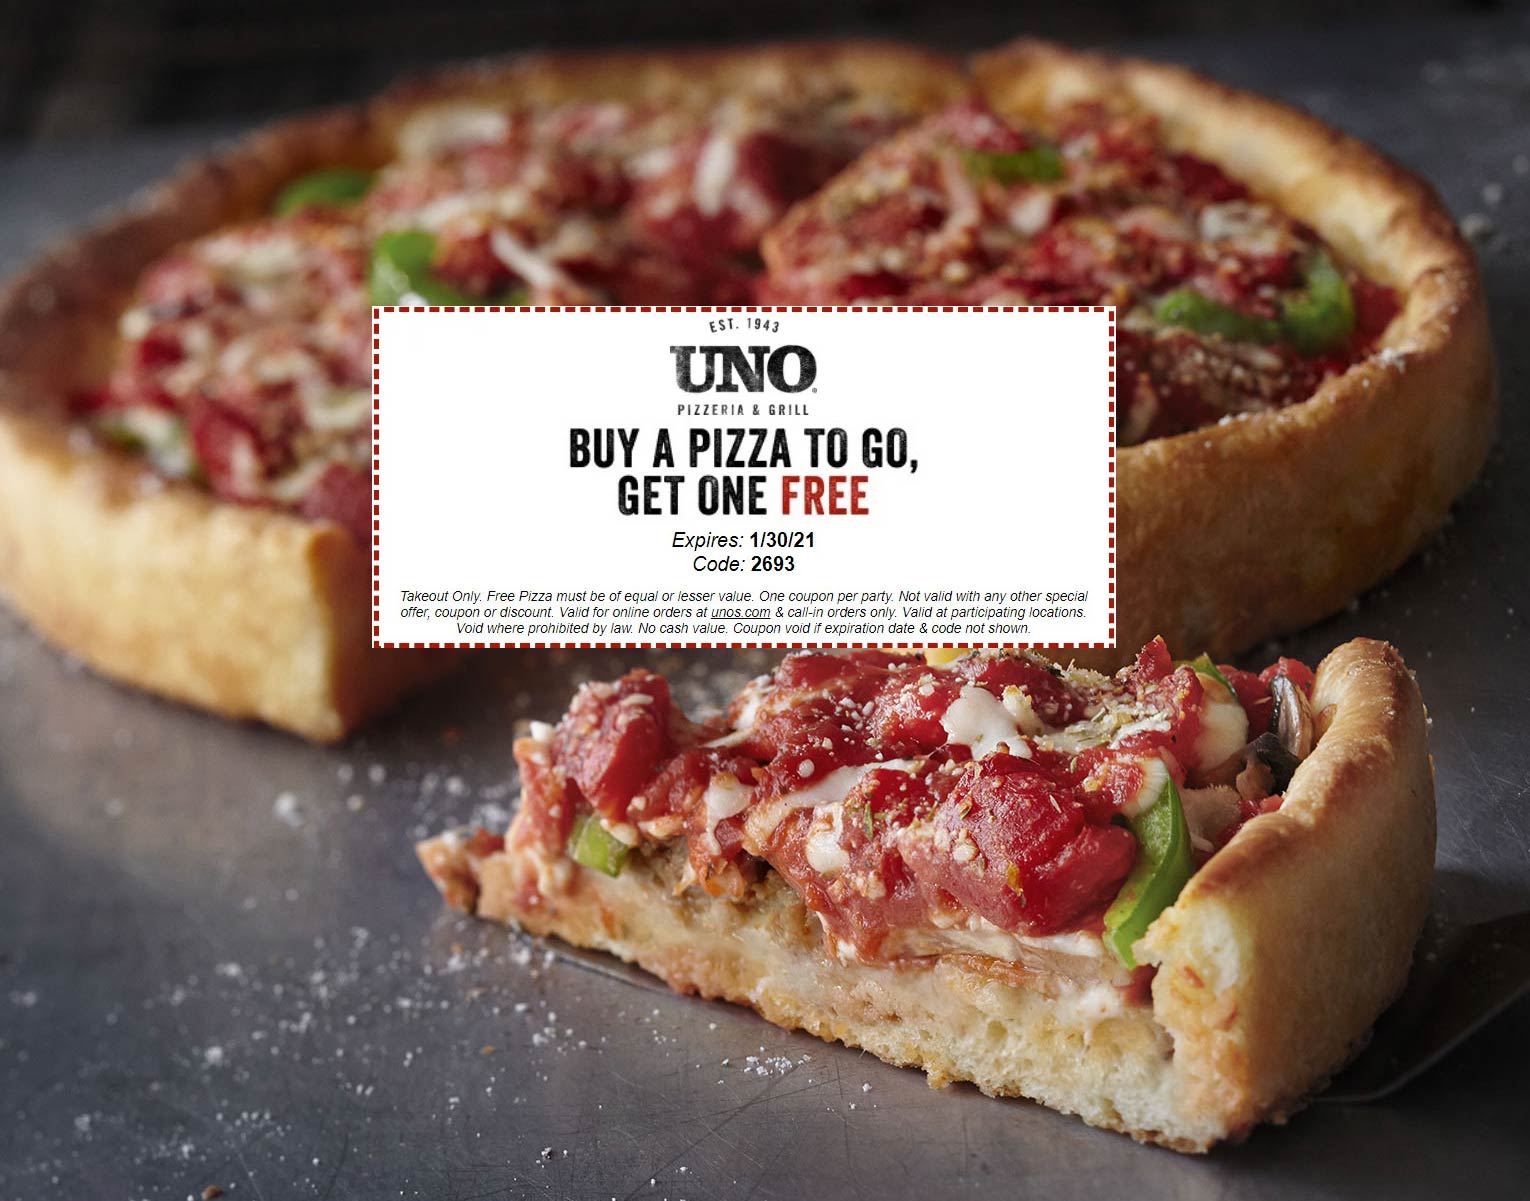 Uno Pizzeria restaurants Coupon  Second takeout pizza free at Uno Pizzeria via promo code 2693 #unopizzeria 